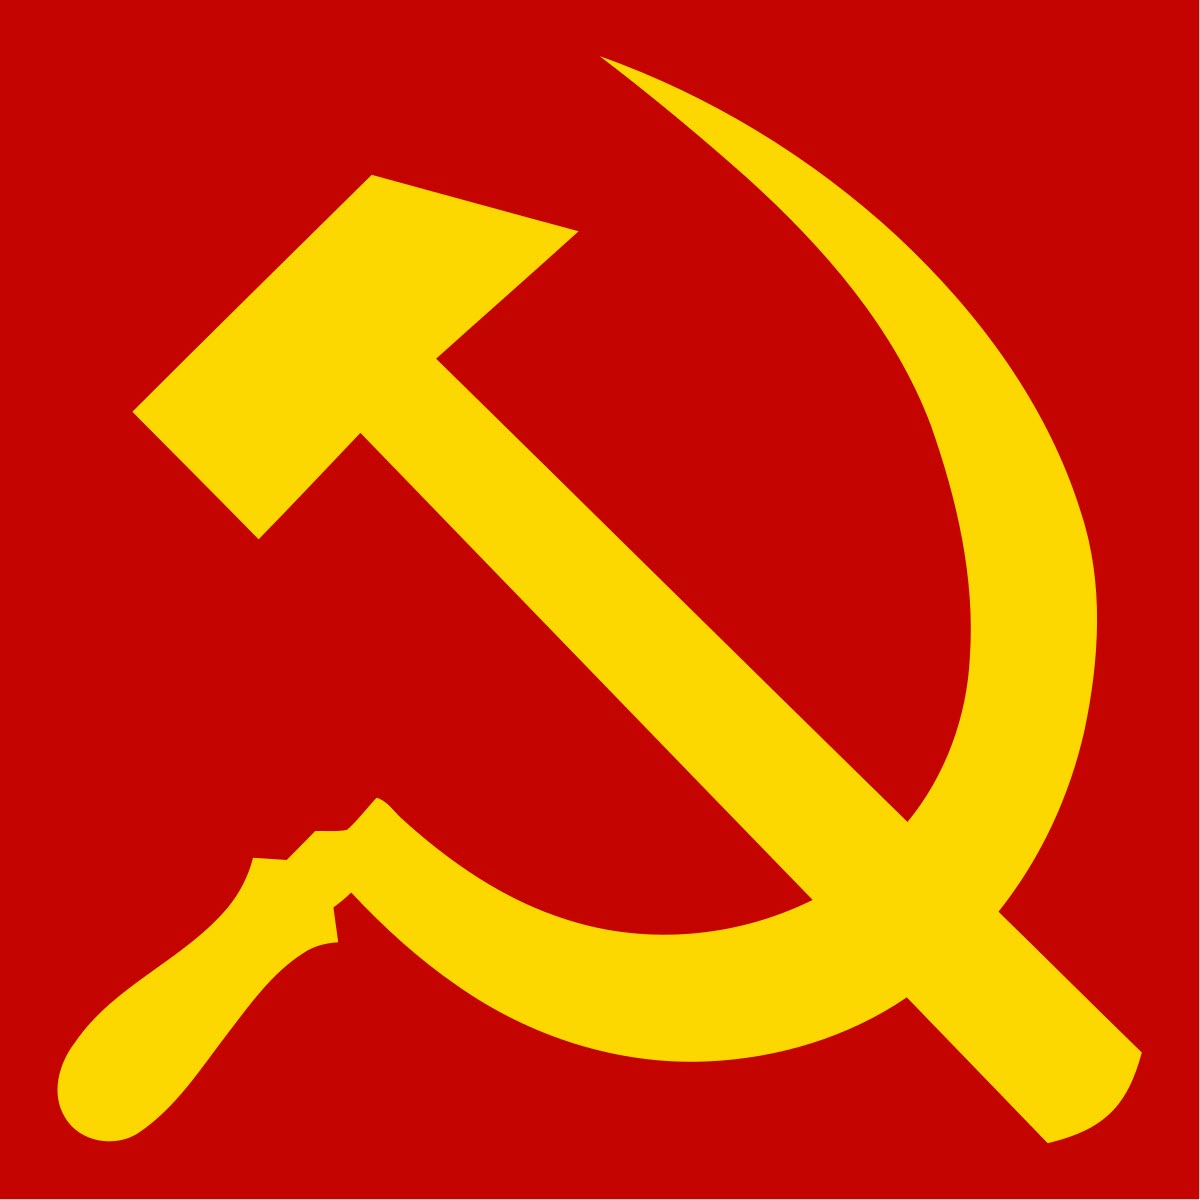 The 45 Communist Goals (1963)